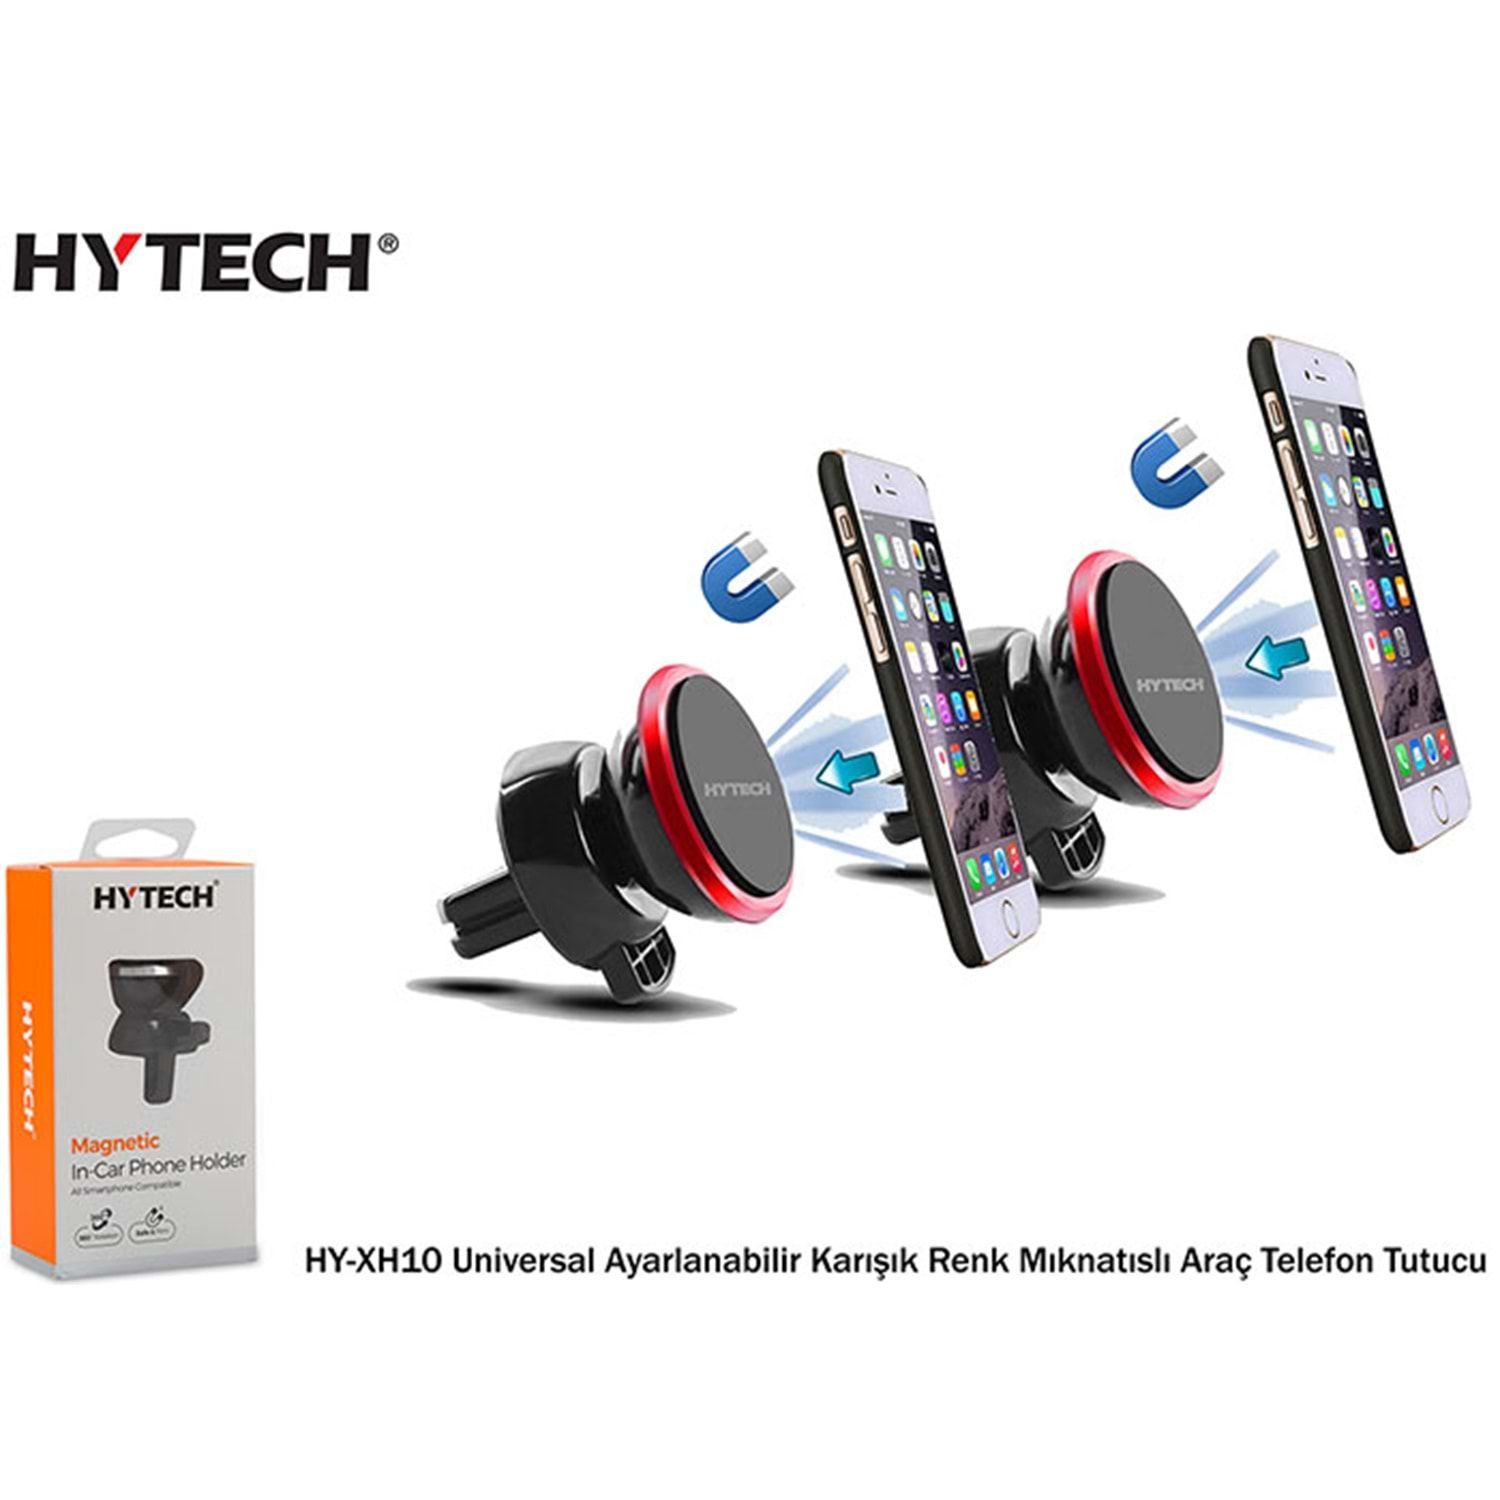 Hytech Magnetic HY-XH10 Universal Ayarlanabilir Mıknatıslı Araç Telefon Tutucu